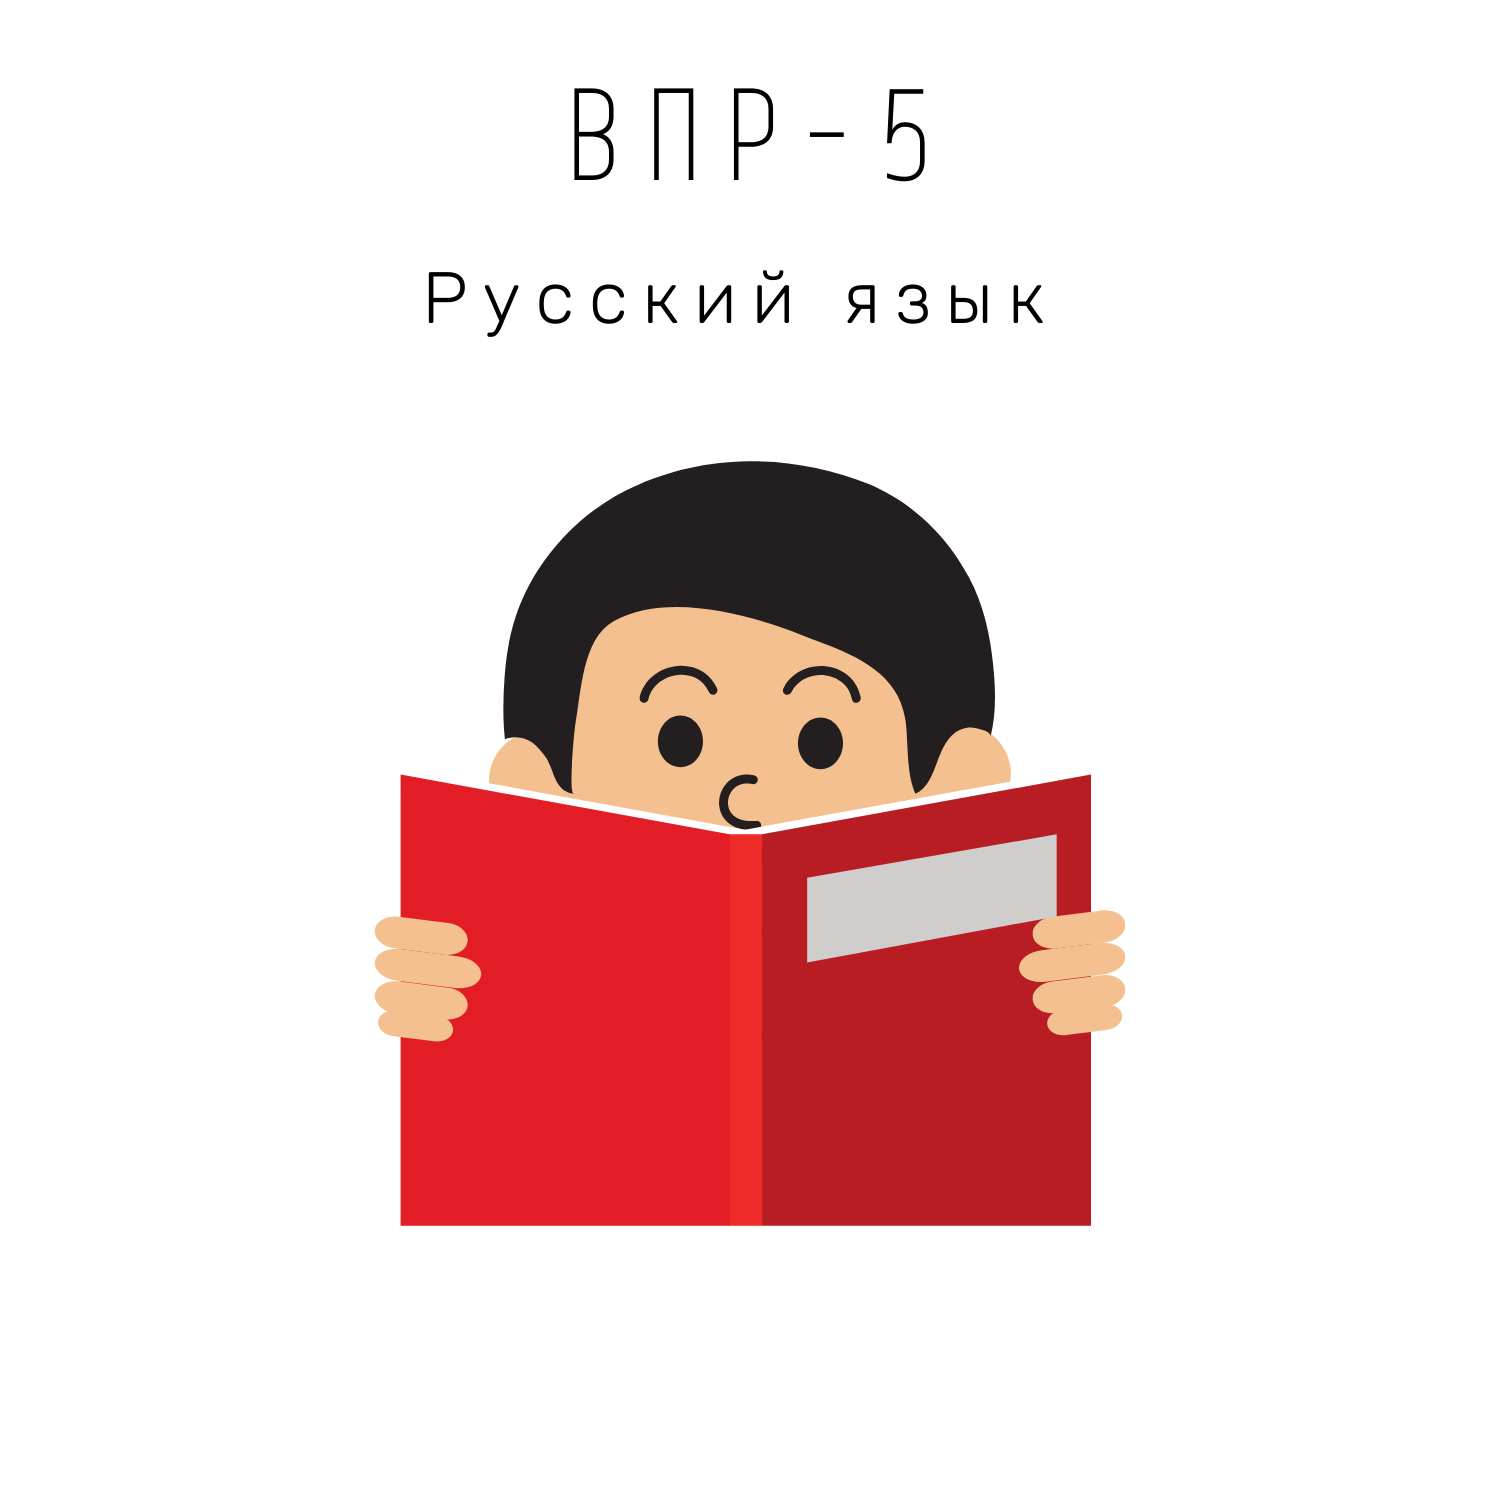 ВПР-5 Русский язык